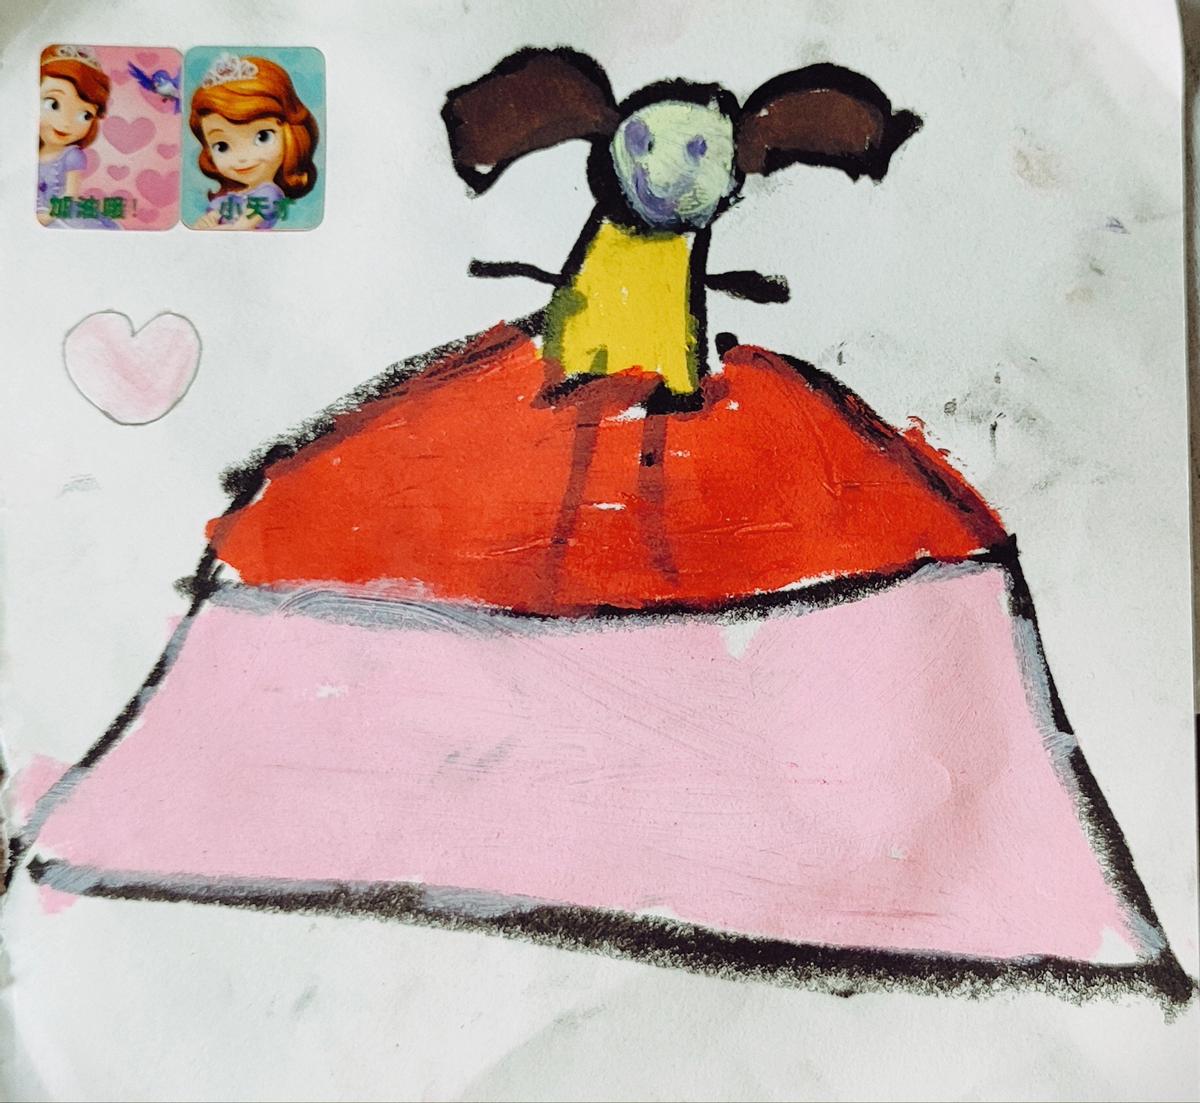 剪纸动画：彩虹长发公主给光头女孩设计创意造型，你觉得好看吗？-小樱工艺-小樱工艺-哔哩哔哩视频